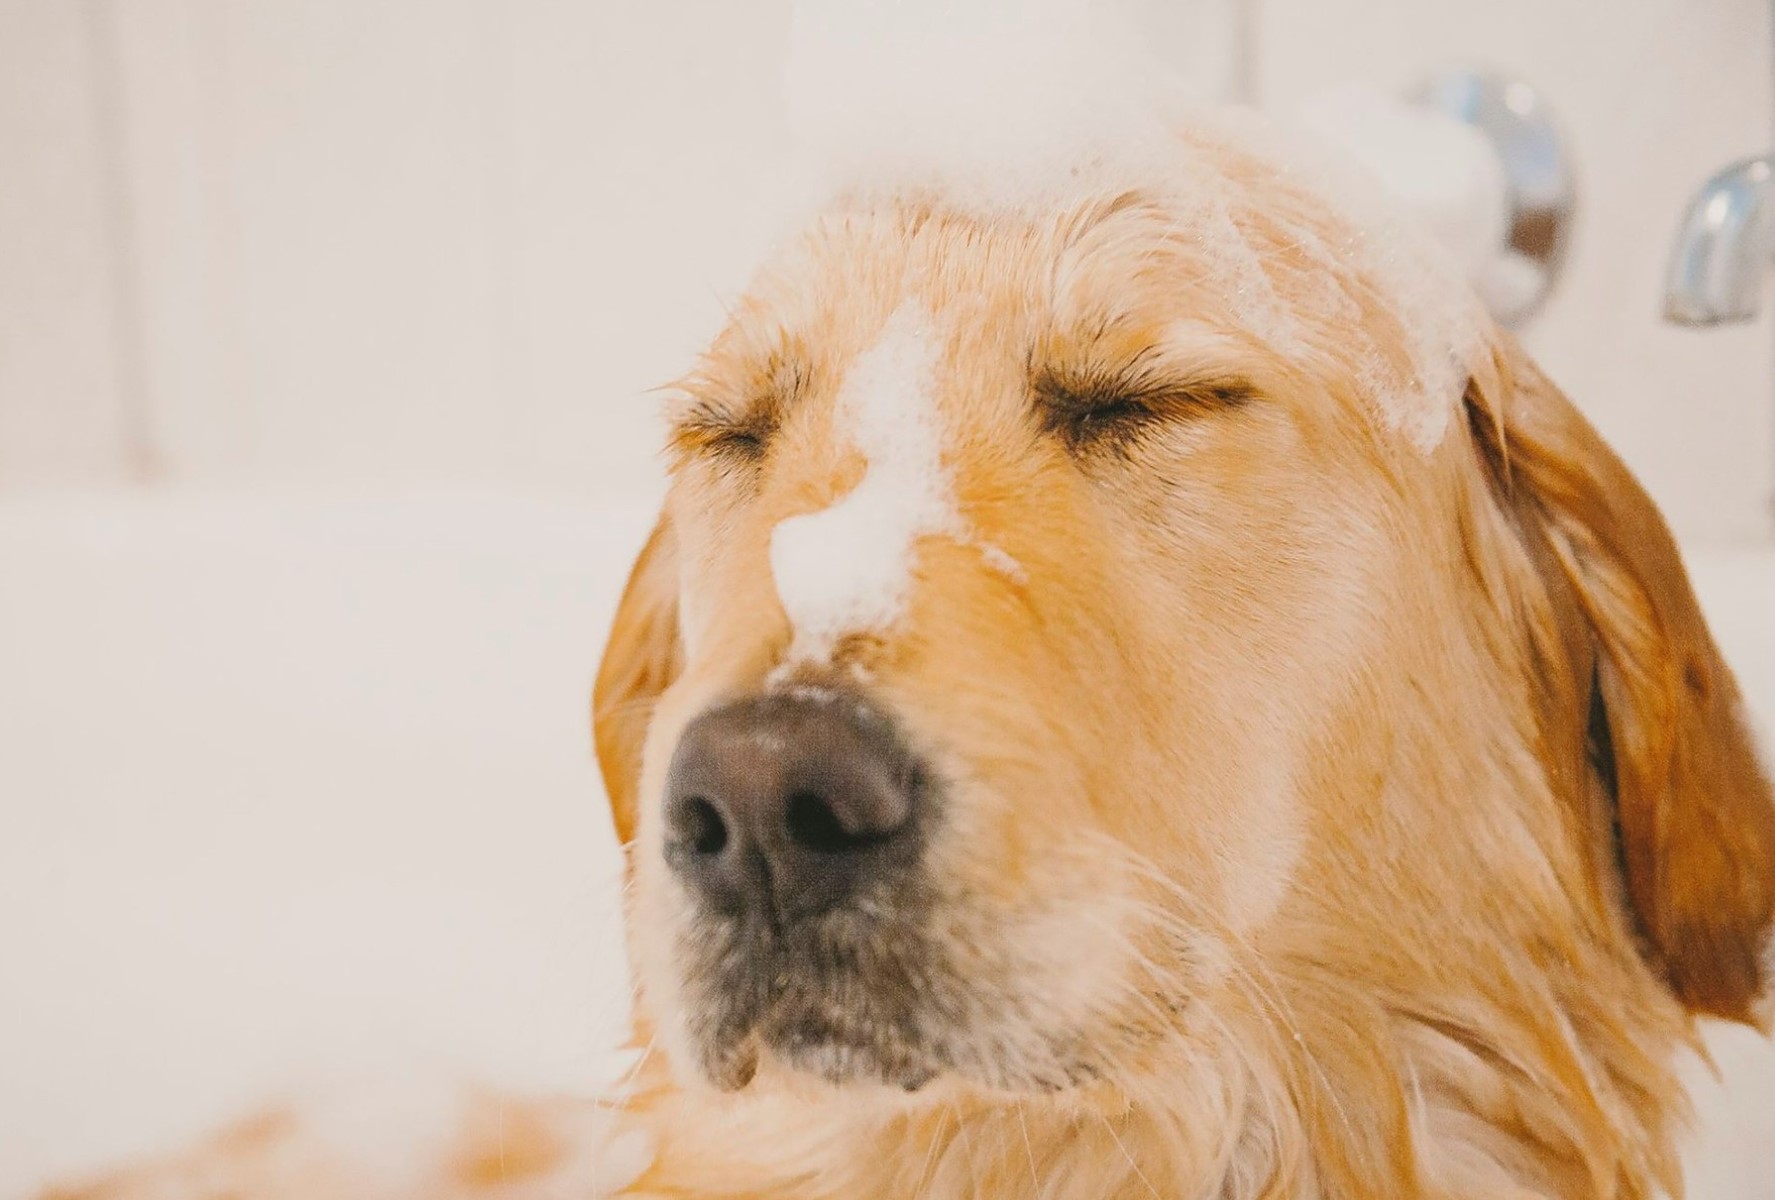 Watch As Fleas Meet Their Watery Demise In A Dog's Luxurious Bath!